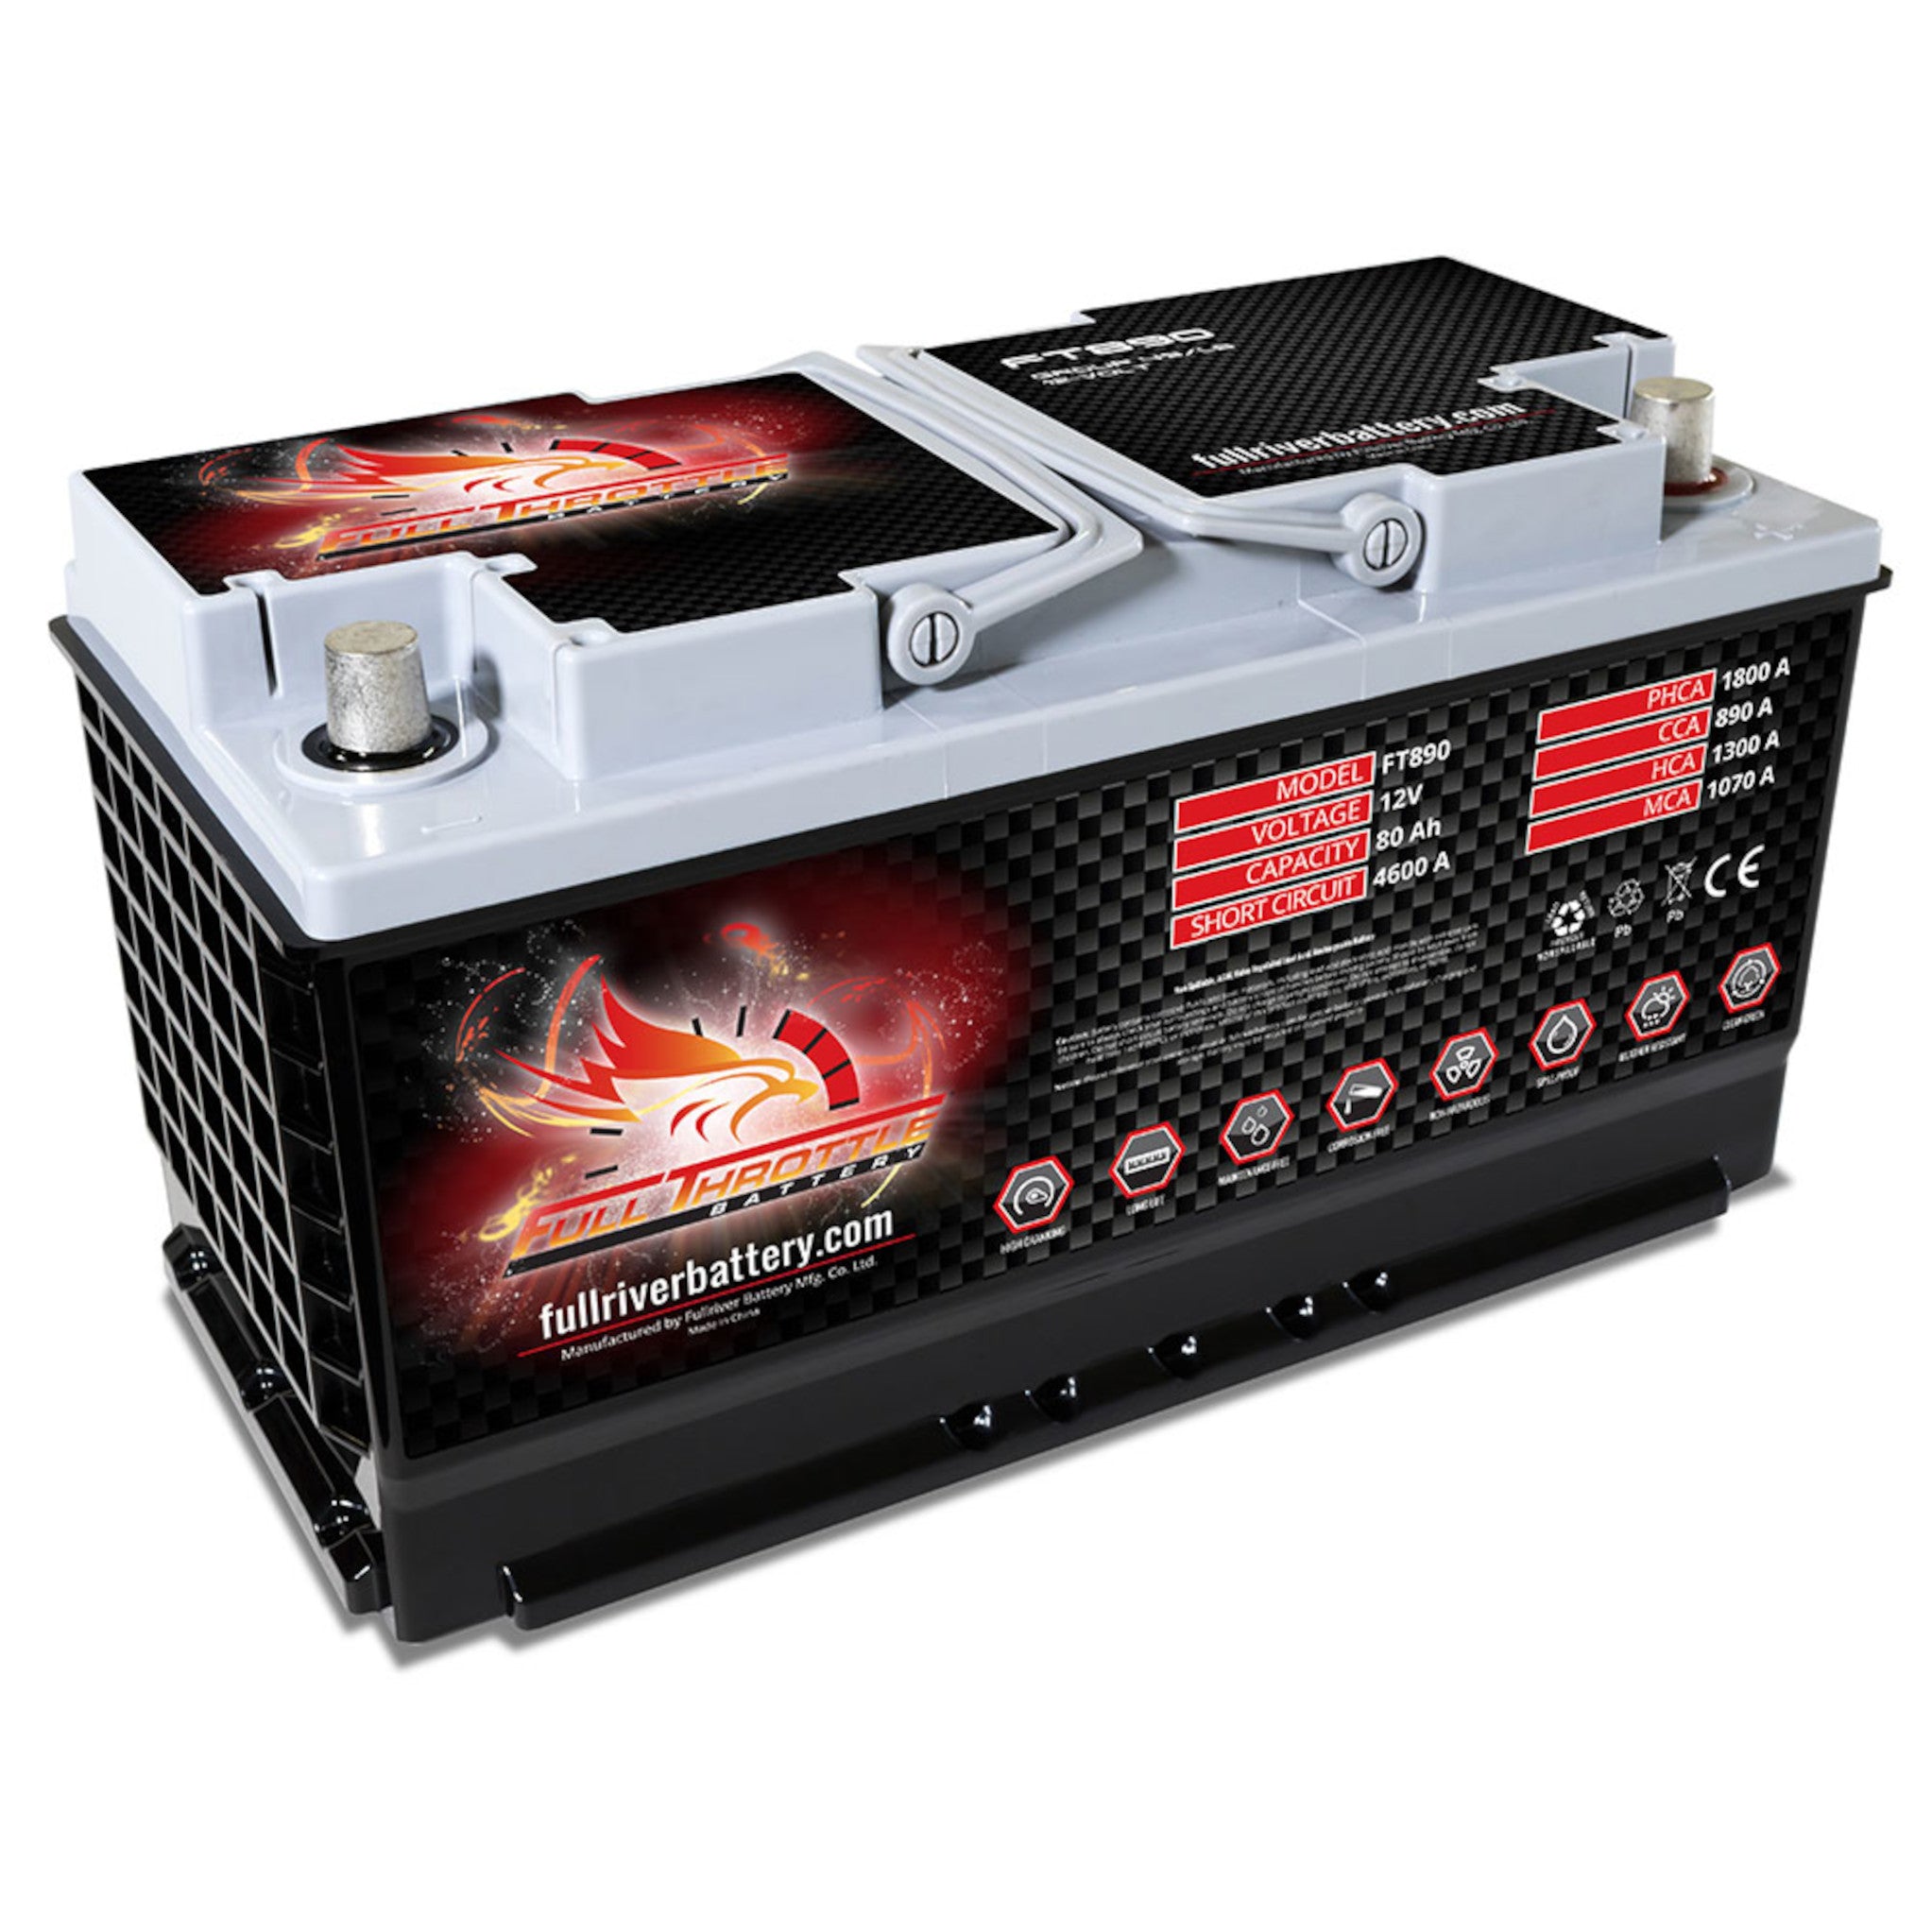 Full Throttle FT890-49 12V High Performance AGM Group 49 Battery